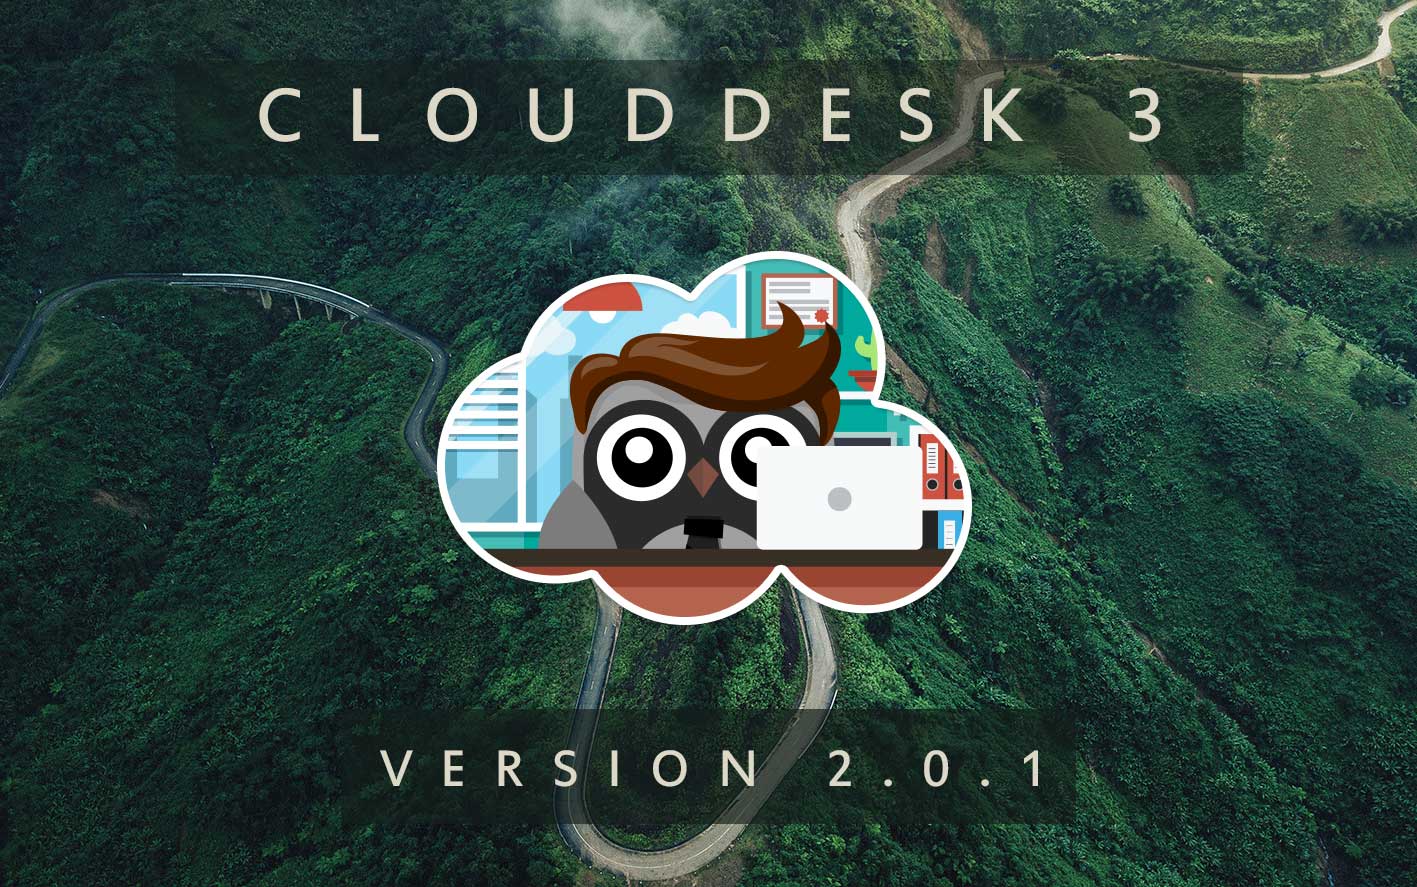 Cloud Desk 3 - Version 2.0.1